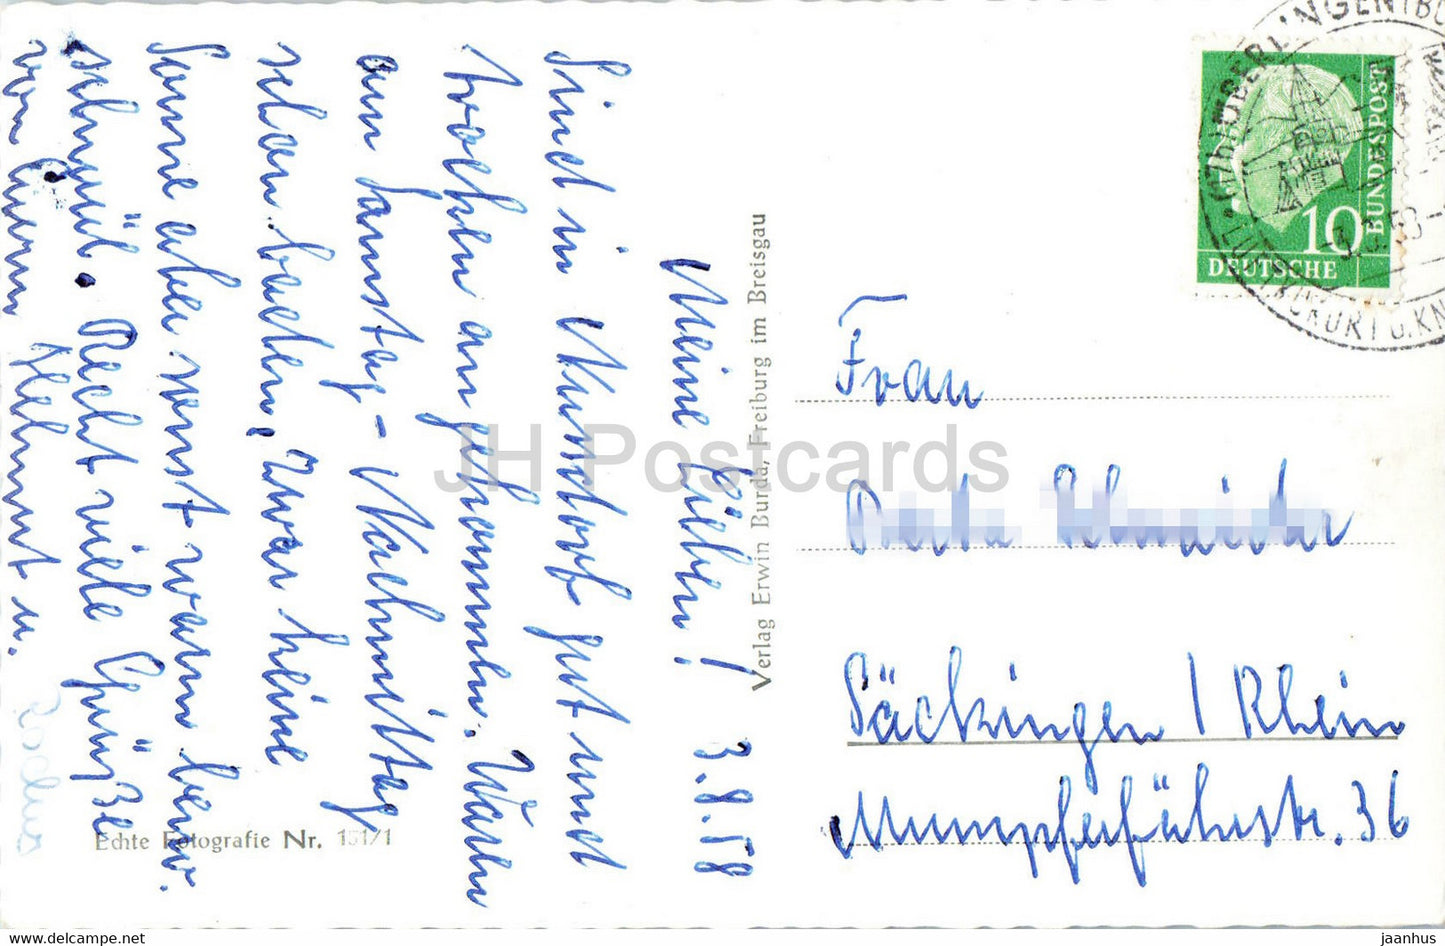 Nussdorf - Bodensee - mit Schweizer Alpen - carte postale ancienne - 1958 - Allemagne - utilisé